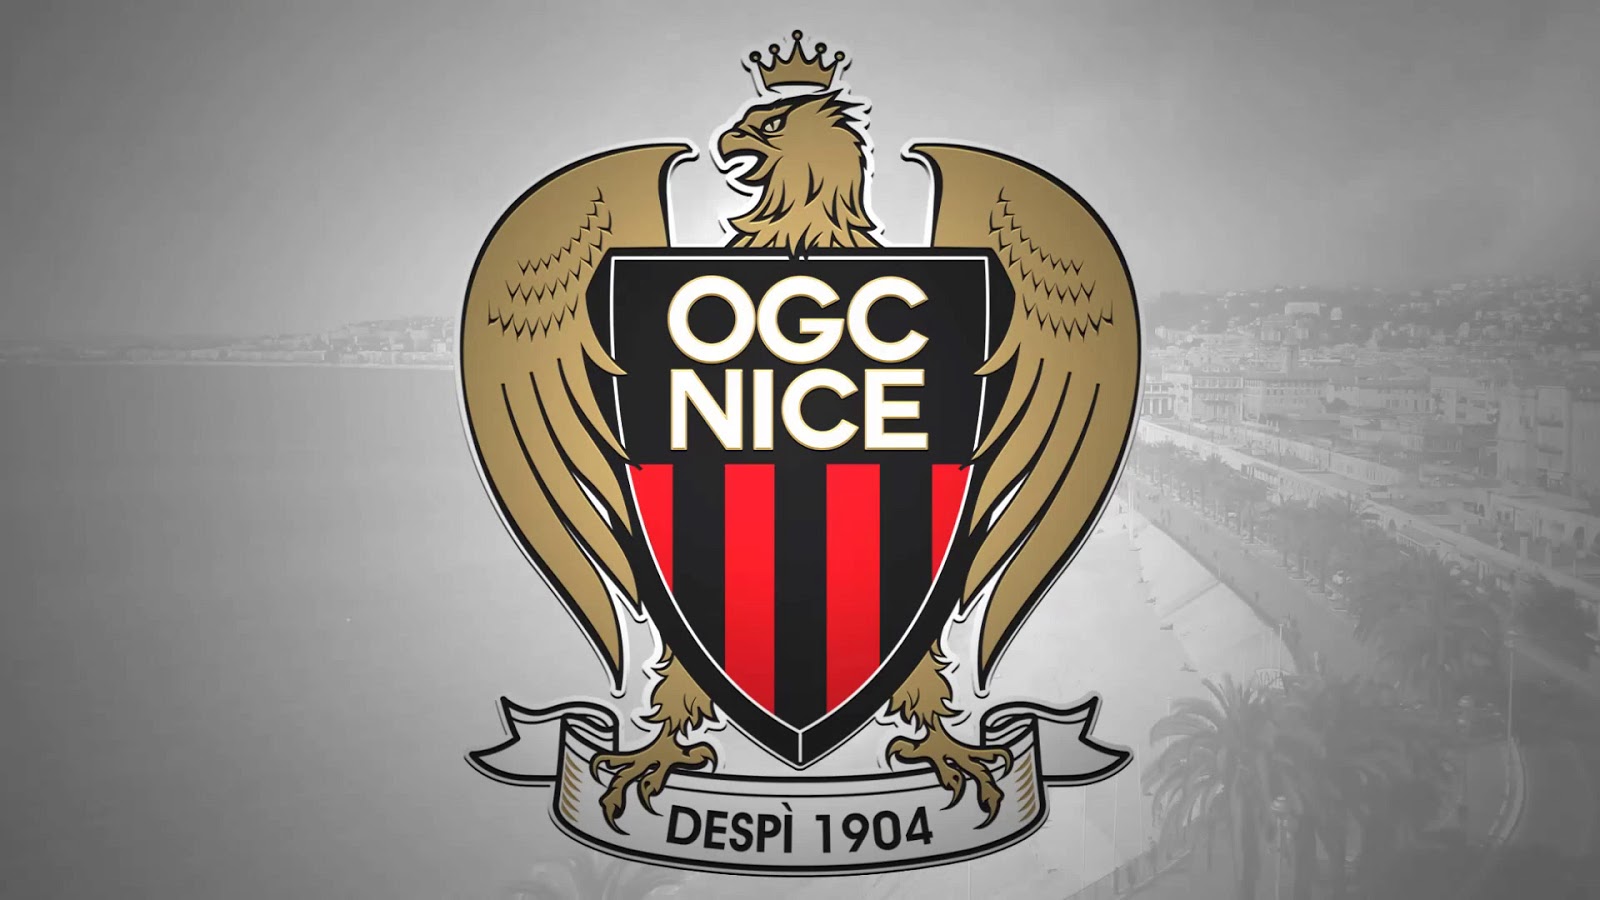 OGC Nice hd images, OGC Nice pics, OGC Nice football team, OGC Nice football team pictures